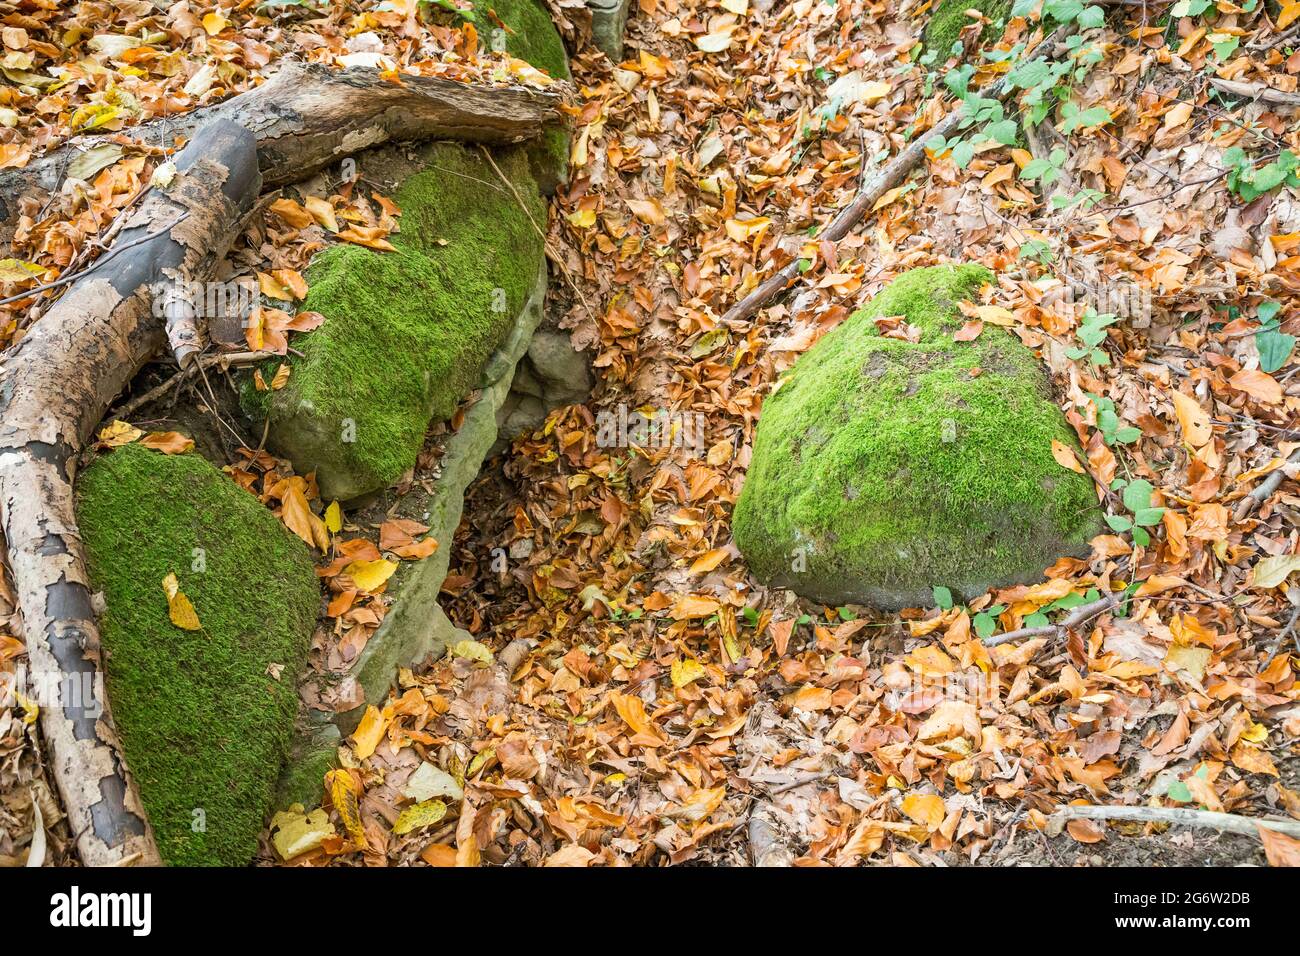 Herbst im Wald - Steine mit grünem Moos auf einem Teppich aus bunten Blättern Stockfoto